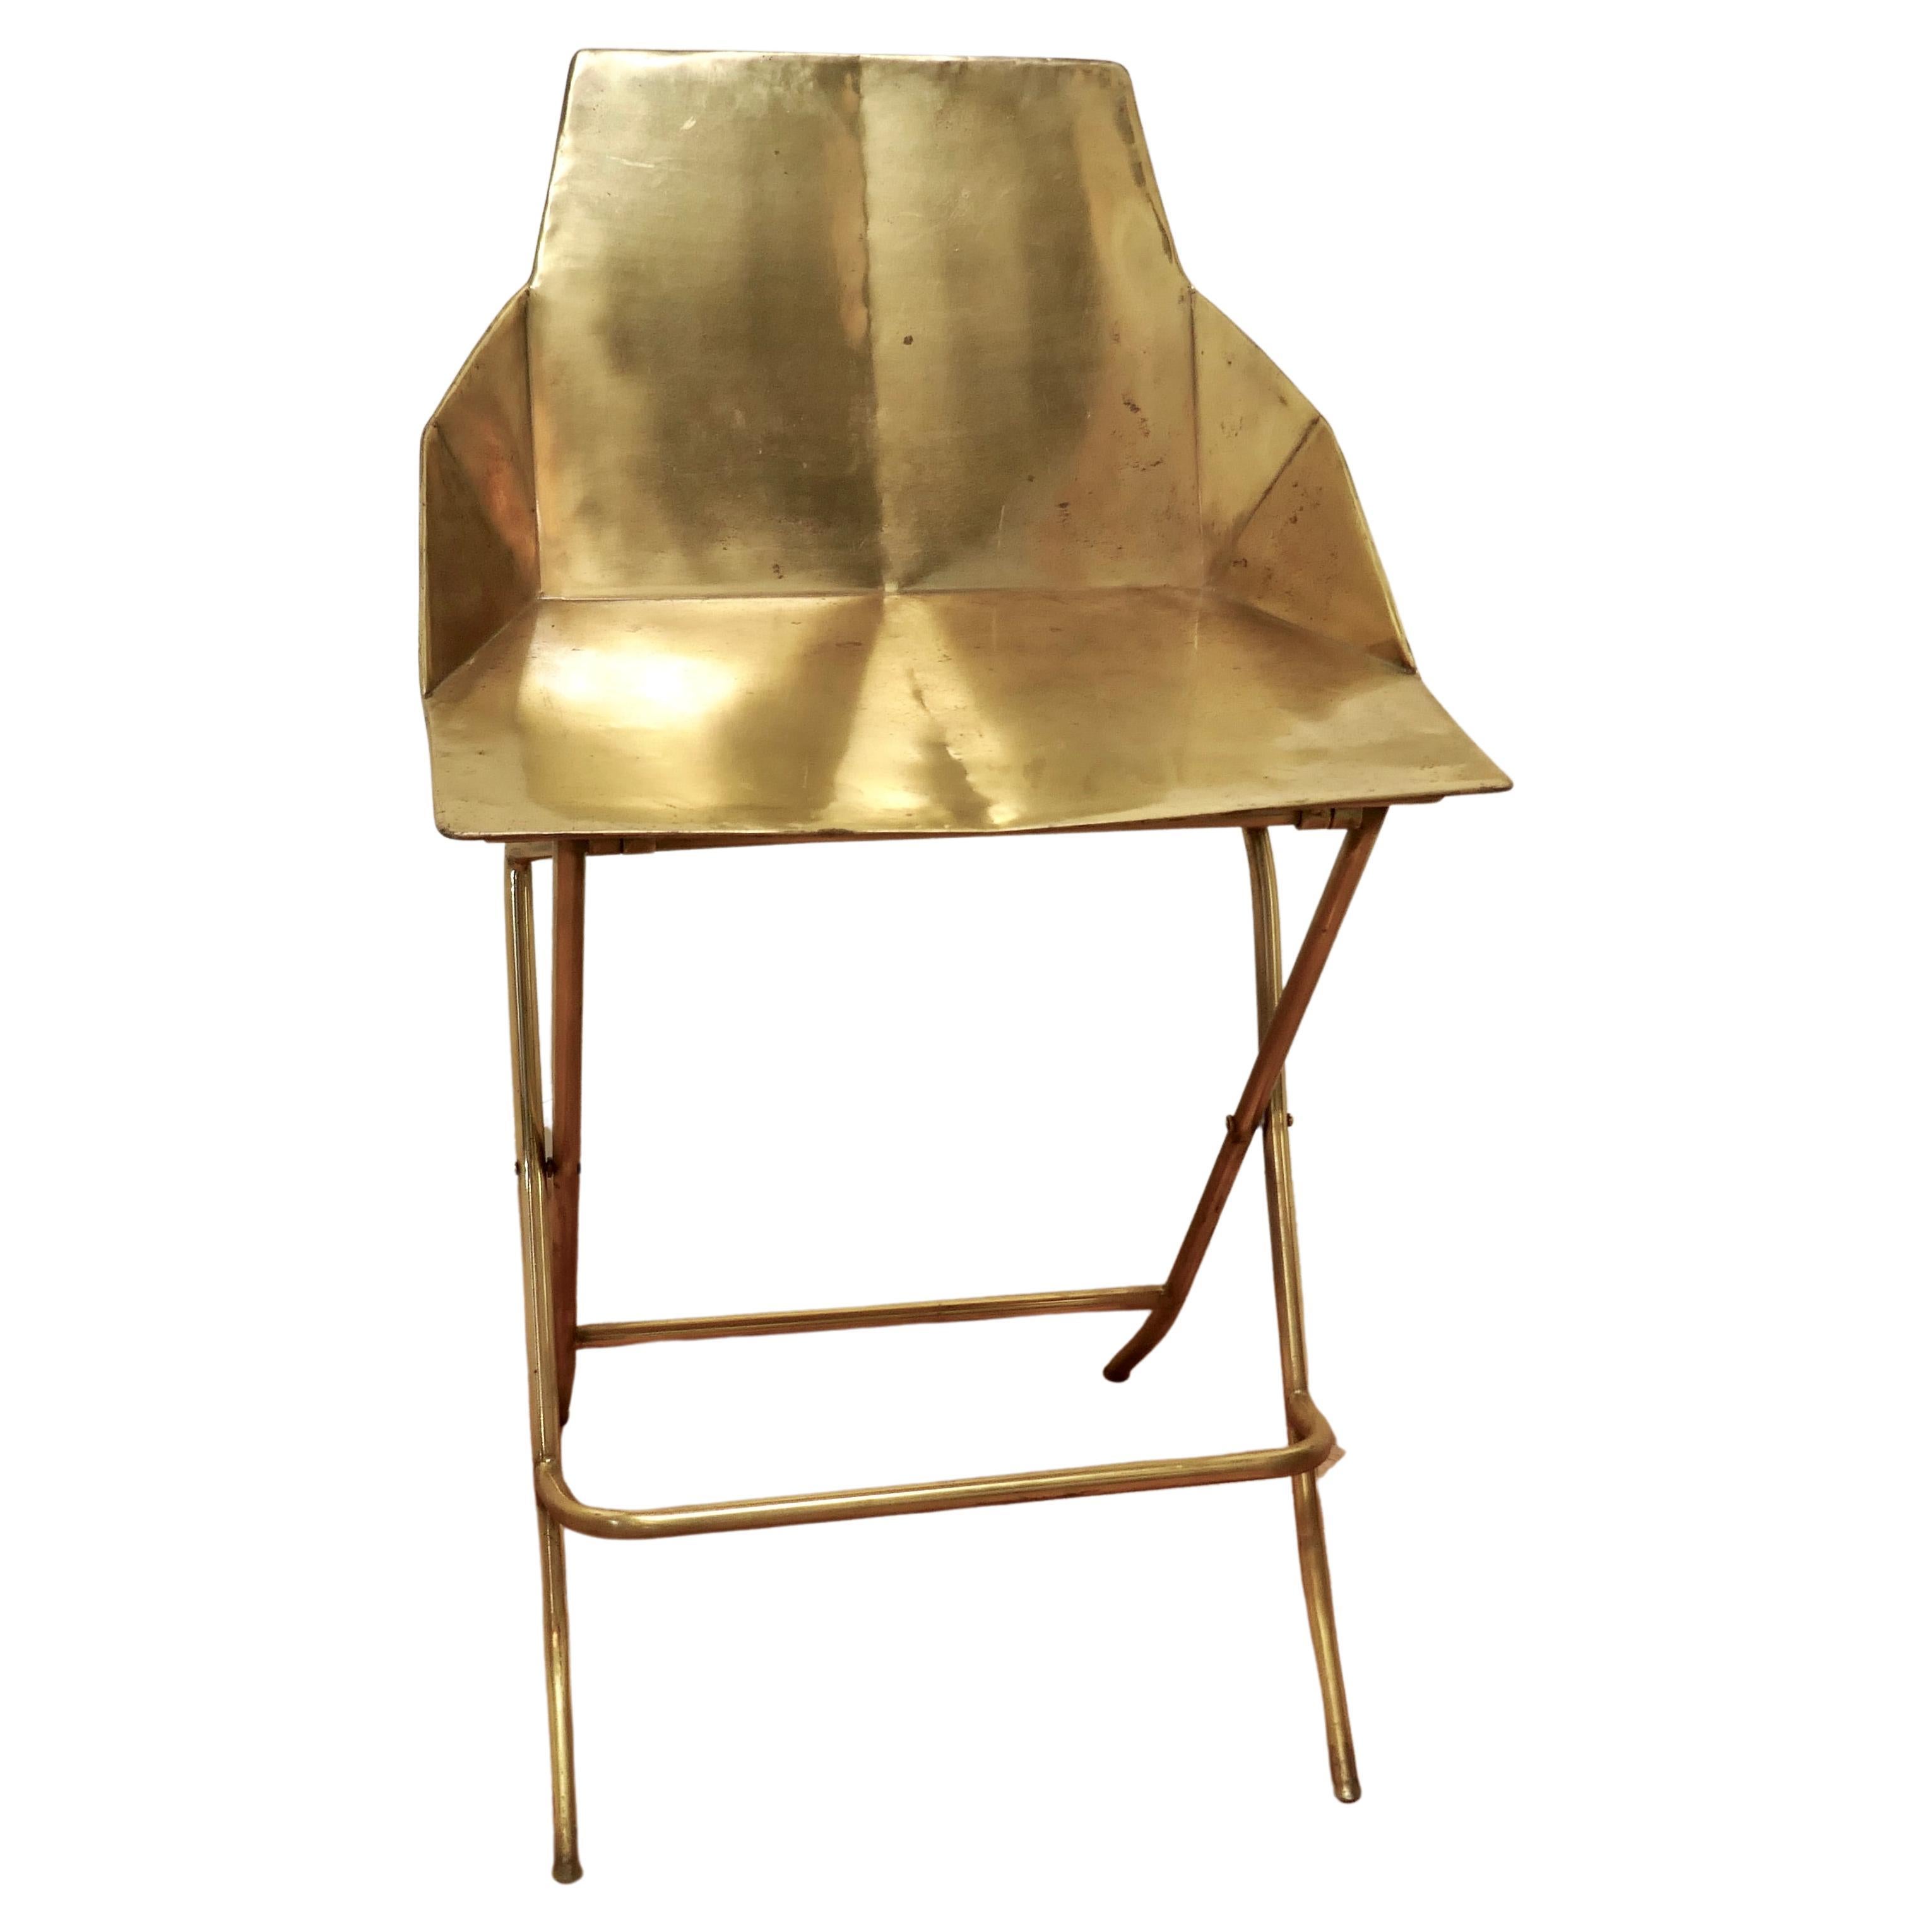 Unusual Brass Adjustable Designer Chair